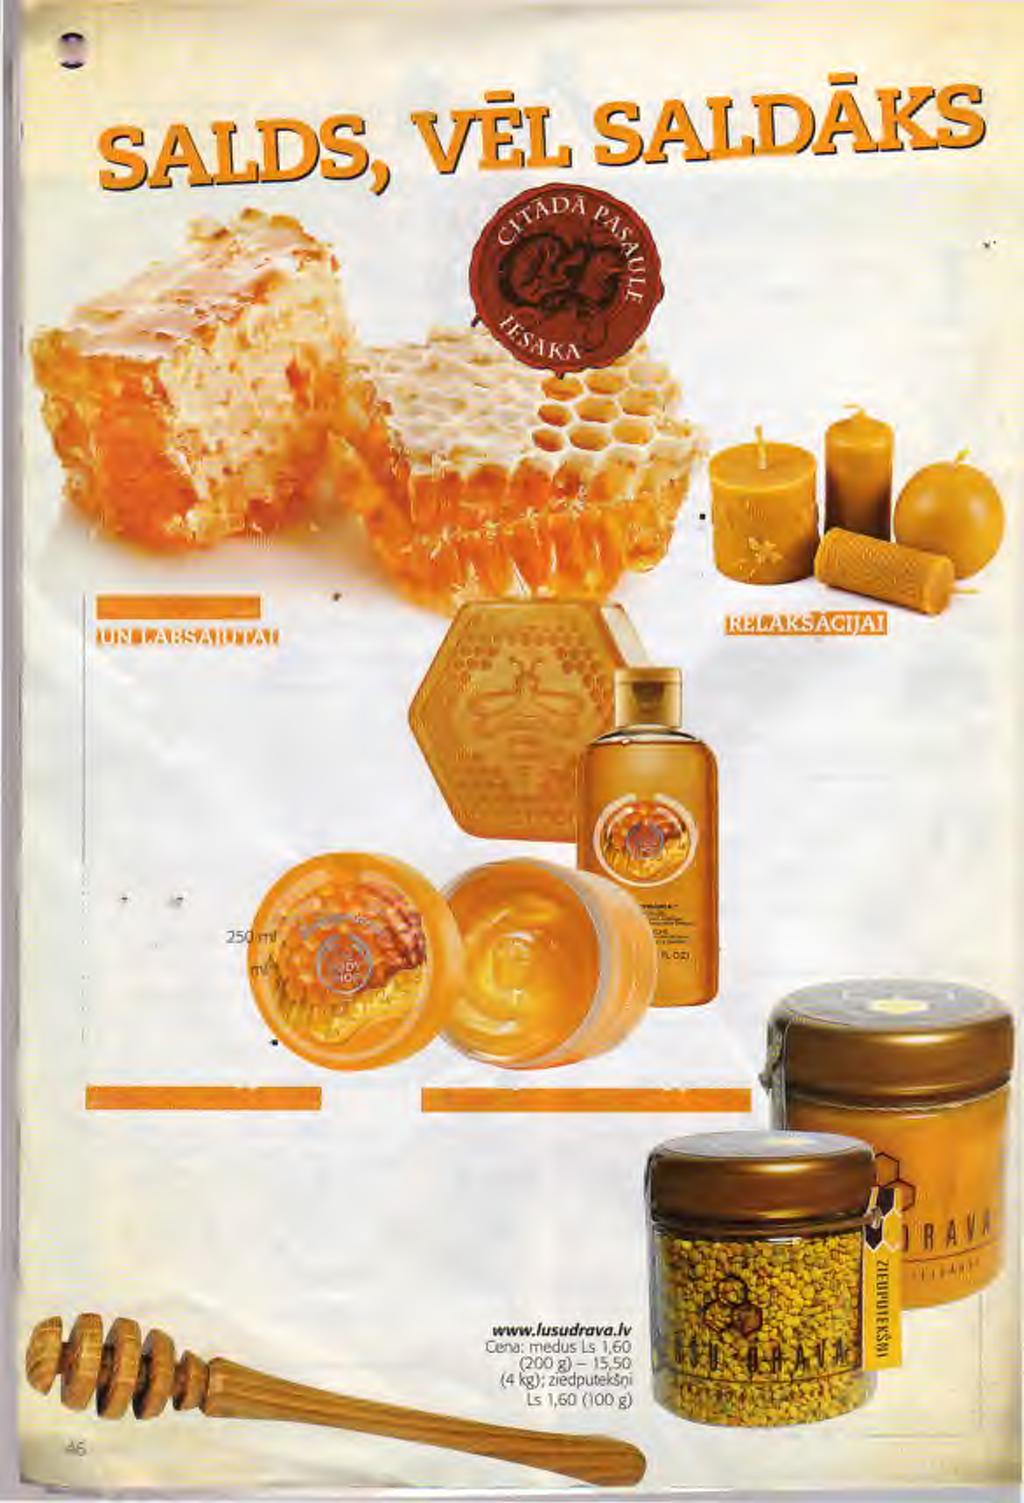 MĒNEŠA AKTUALITĀTE - MEDUS Mazās medus gotiņas bites steidz ievākt pēd ējo-viršu - medu, bet mēs esam atradusi dažādas medus lietas, ko iesākām jums.